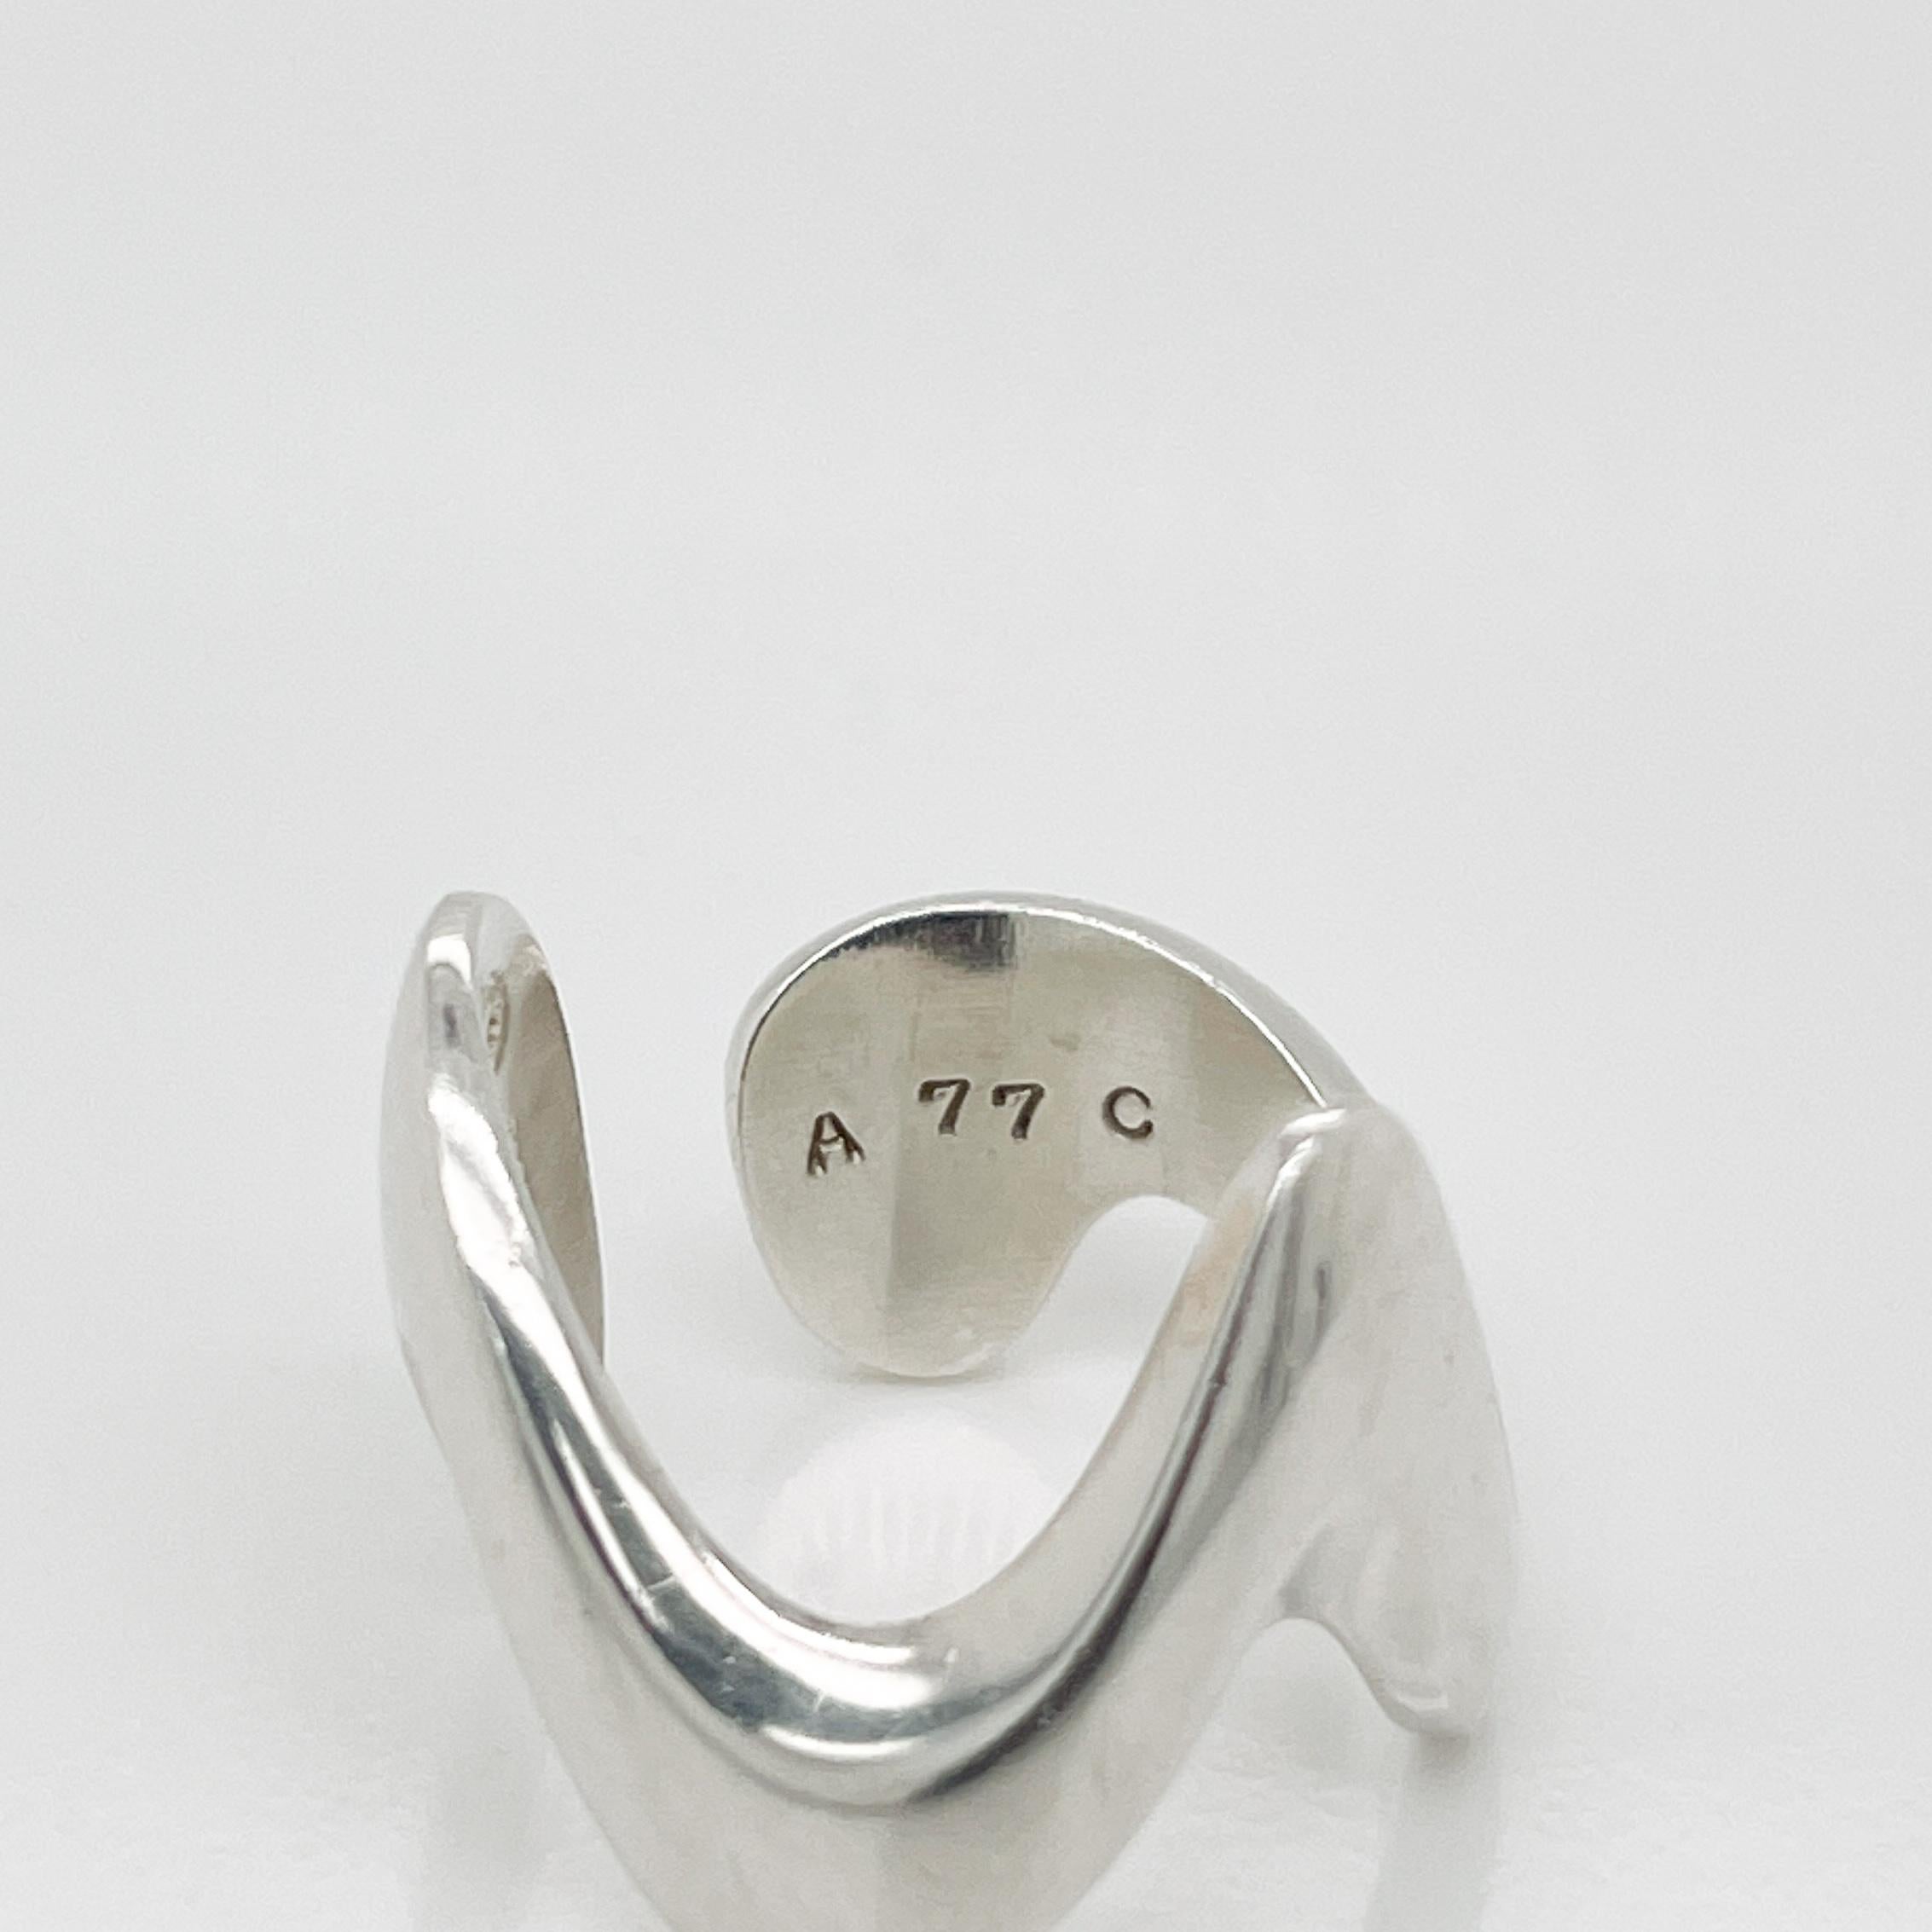 Modernist Georg Jensen Sterling Silver Ring Model No. A 77 C by Ole Ishøj For Sale 2